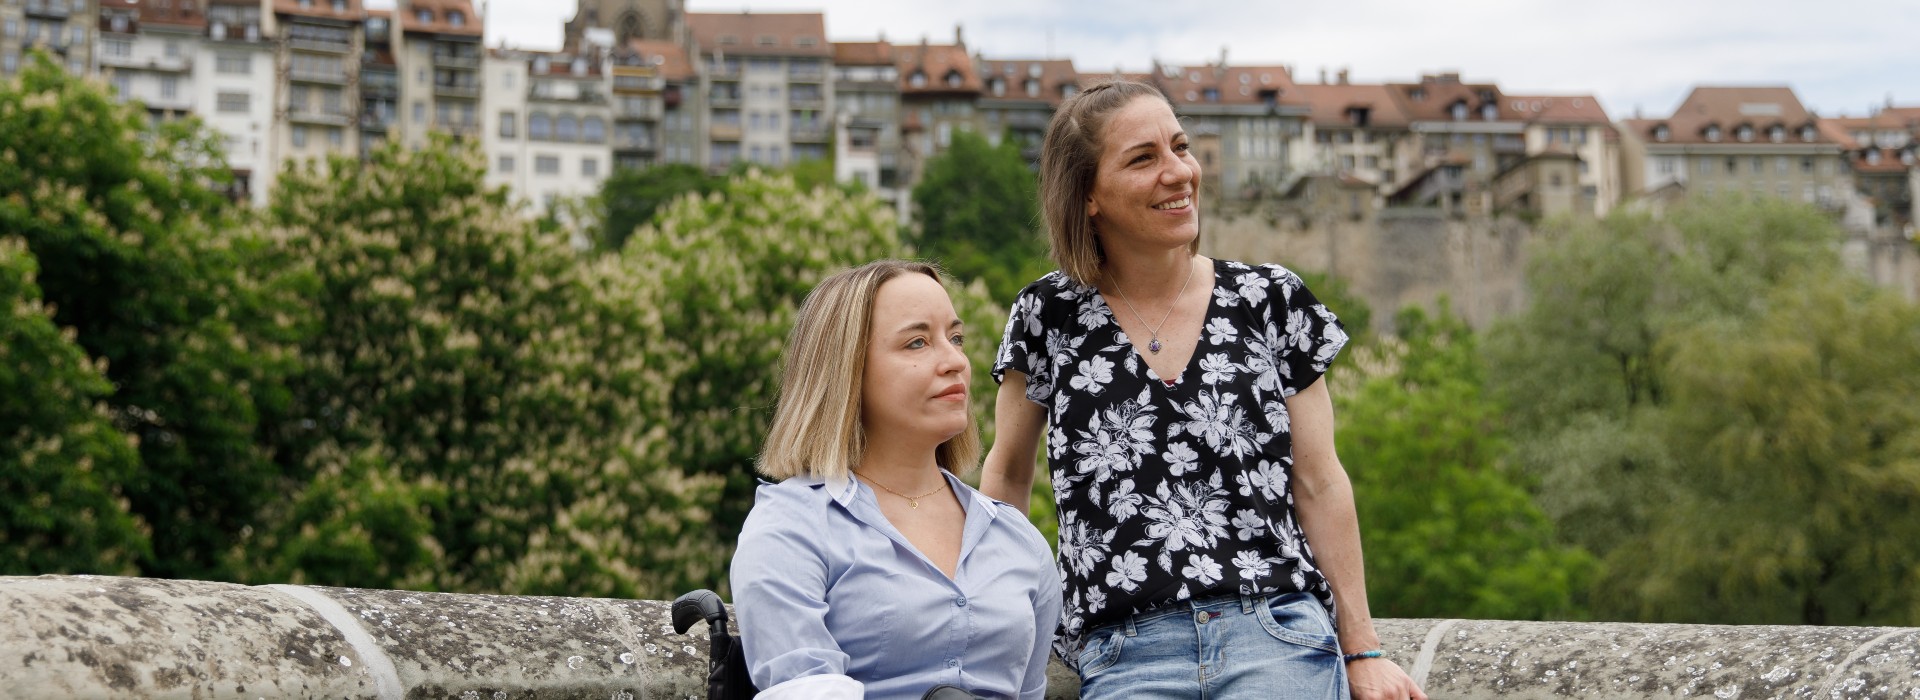 Anouchka mit Freundin in der Altstadt von Freiburg